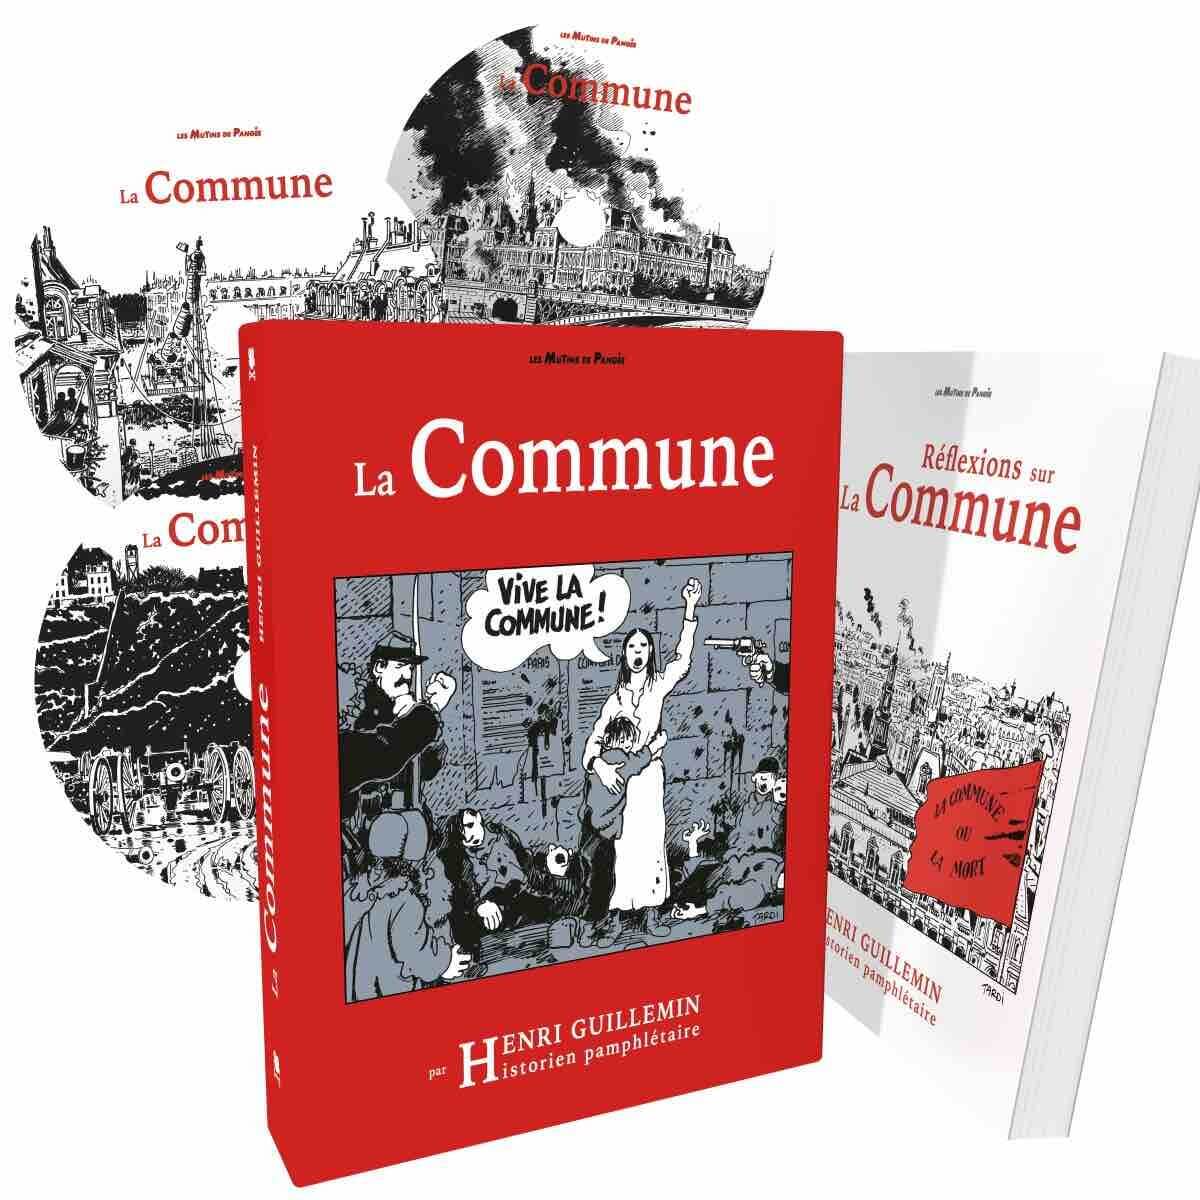 [Cadeau] « La Commune » d’Henri Guillemin : Rue89Lyon vous offre le coffret livre et DVD